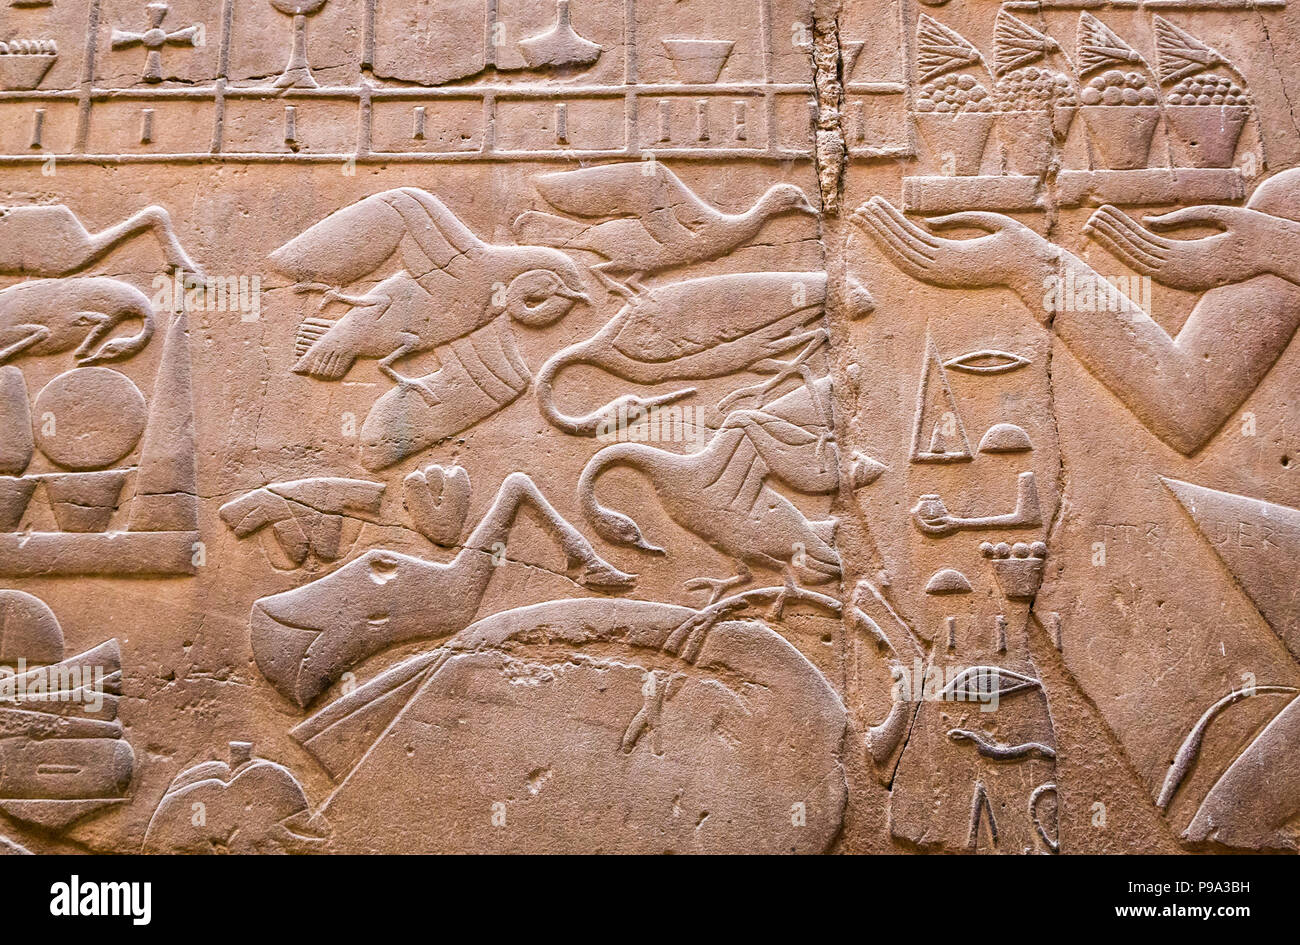 Cerrar detalle de antiguo jeroglífico egipcio, el Templo de Luxor, Luxor, Egipto, África con aves Foto de stock